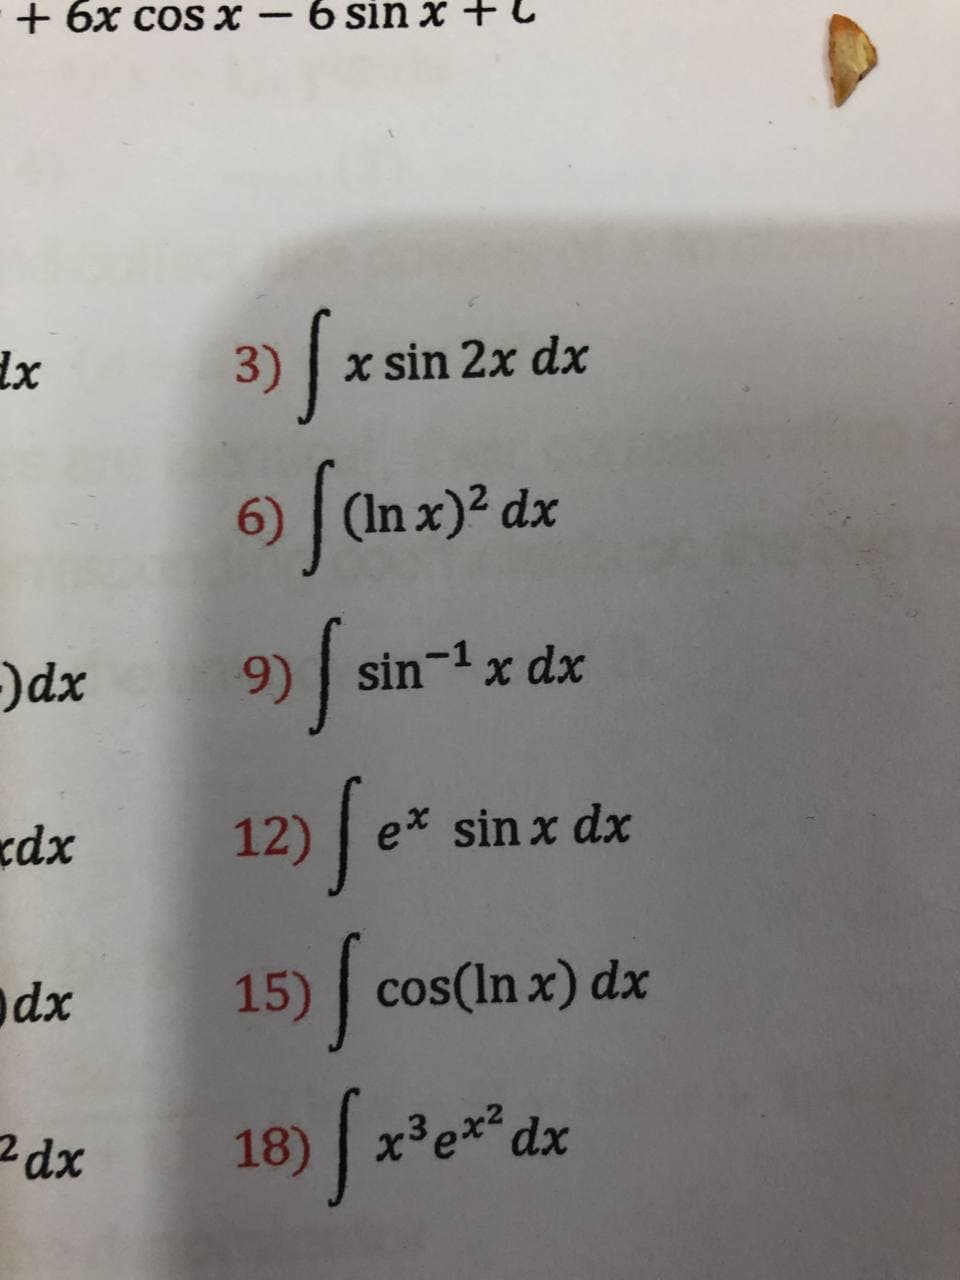 + 6x cos x -6 sin x +
3) | x sin 2x dx
6) (In x)? dx
)dx
9) sin-1x dx
dx
12)fe
e* sin x dx
dx
15) cos(In x) dx
18) x3e* dx
